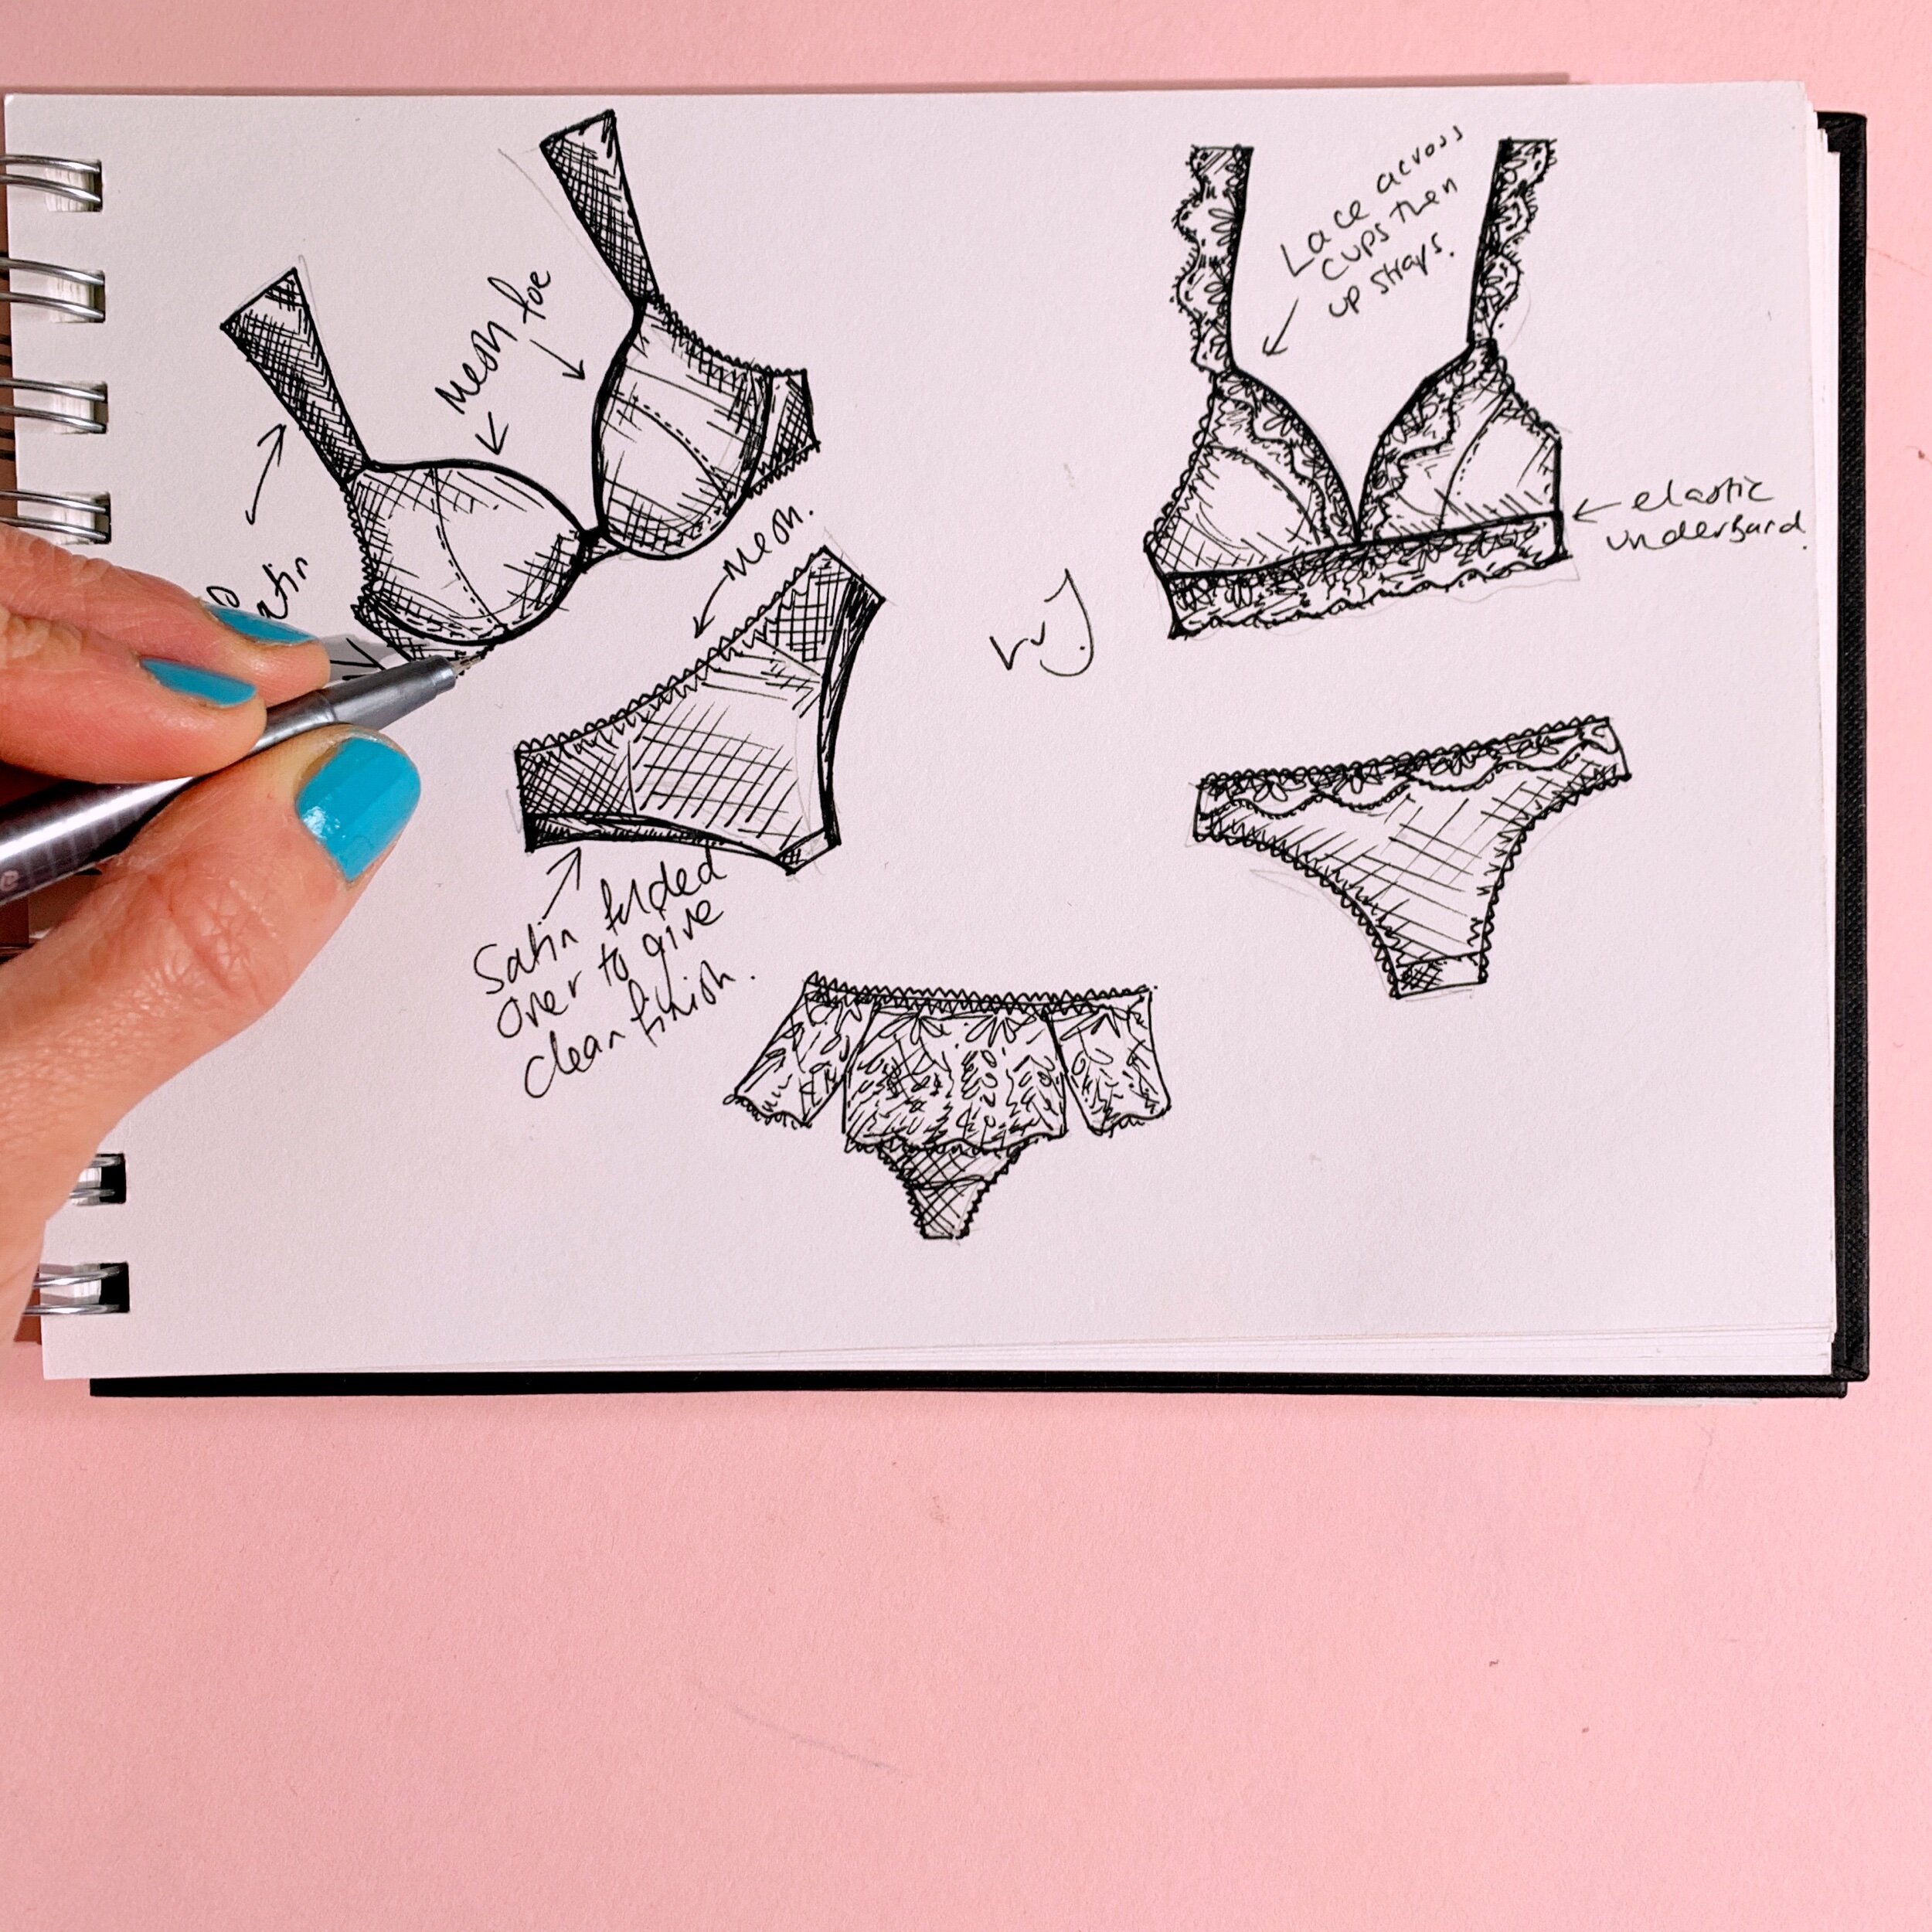 Adding colour into lingerie sketches — Van Jonsson Design